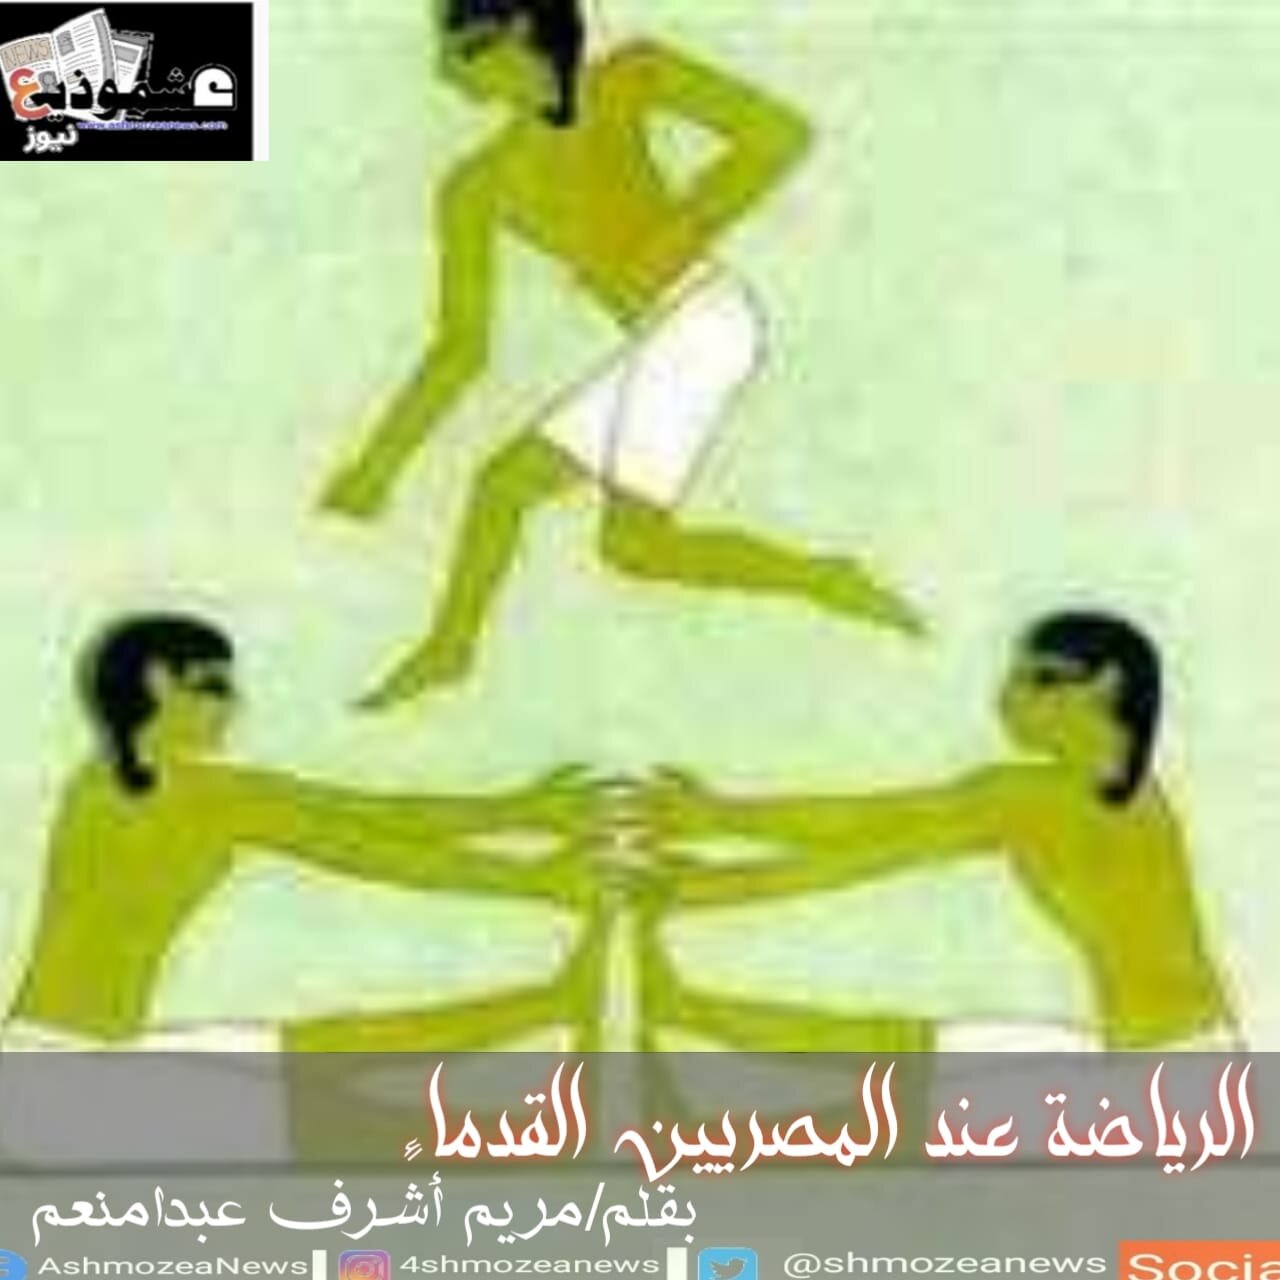 الرياضة عند المصريين القدماء